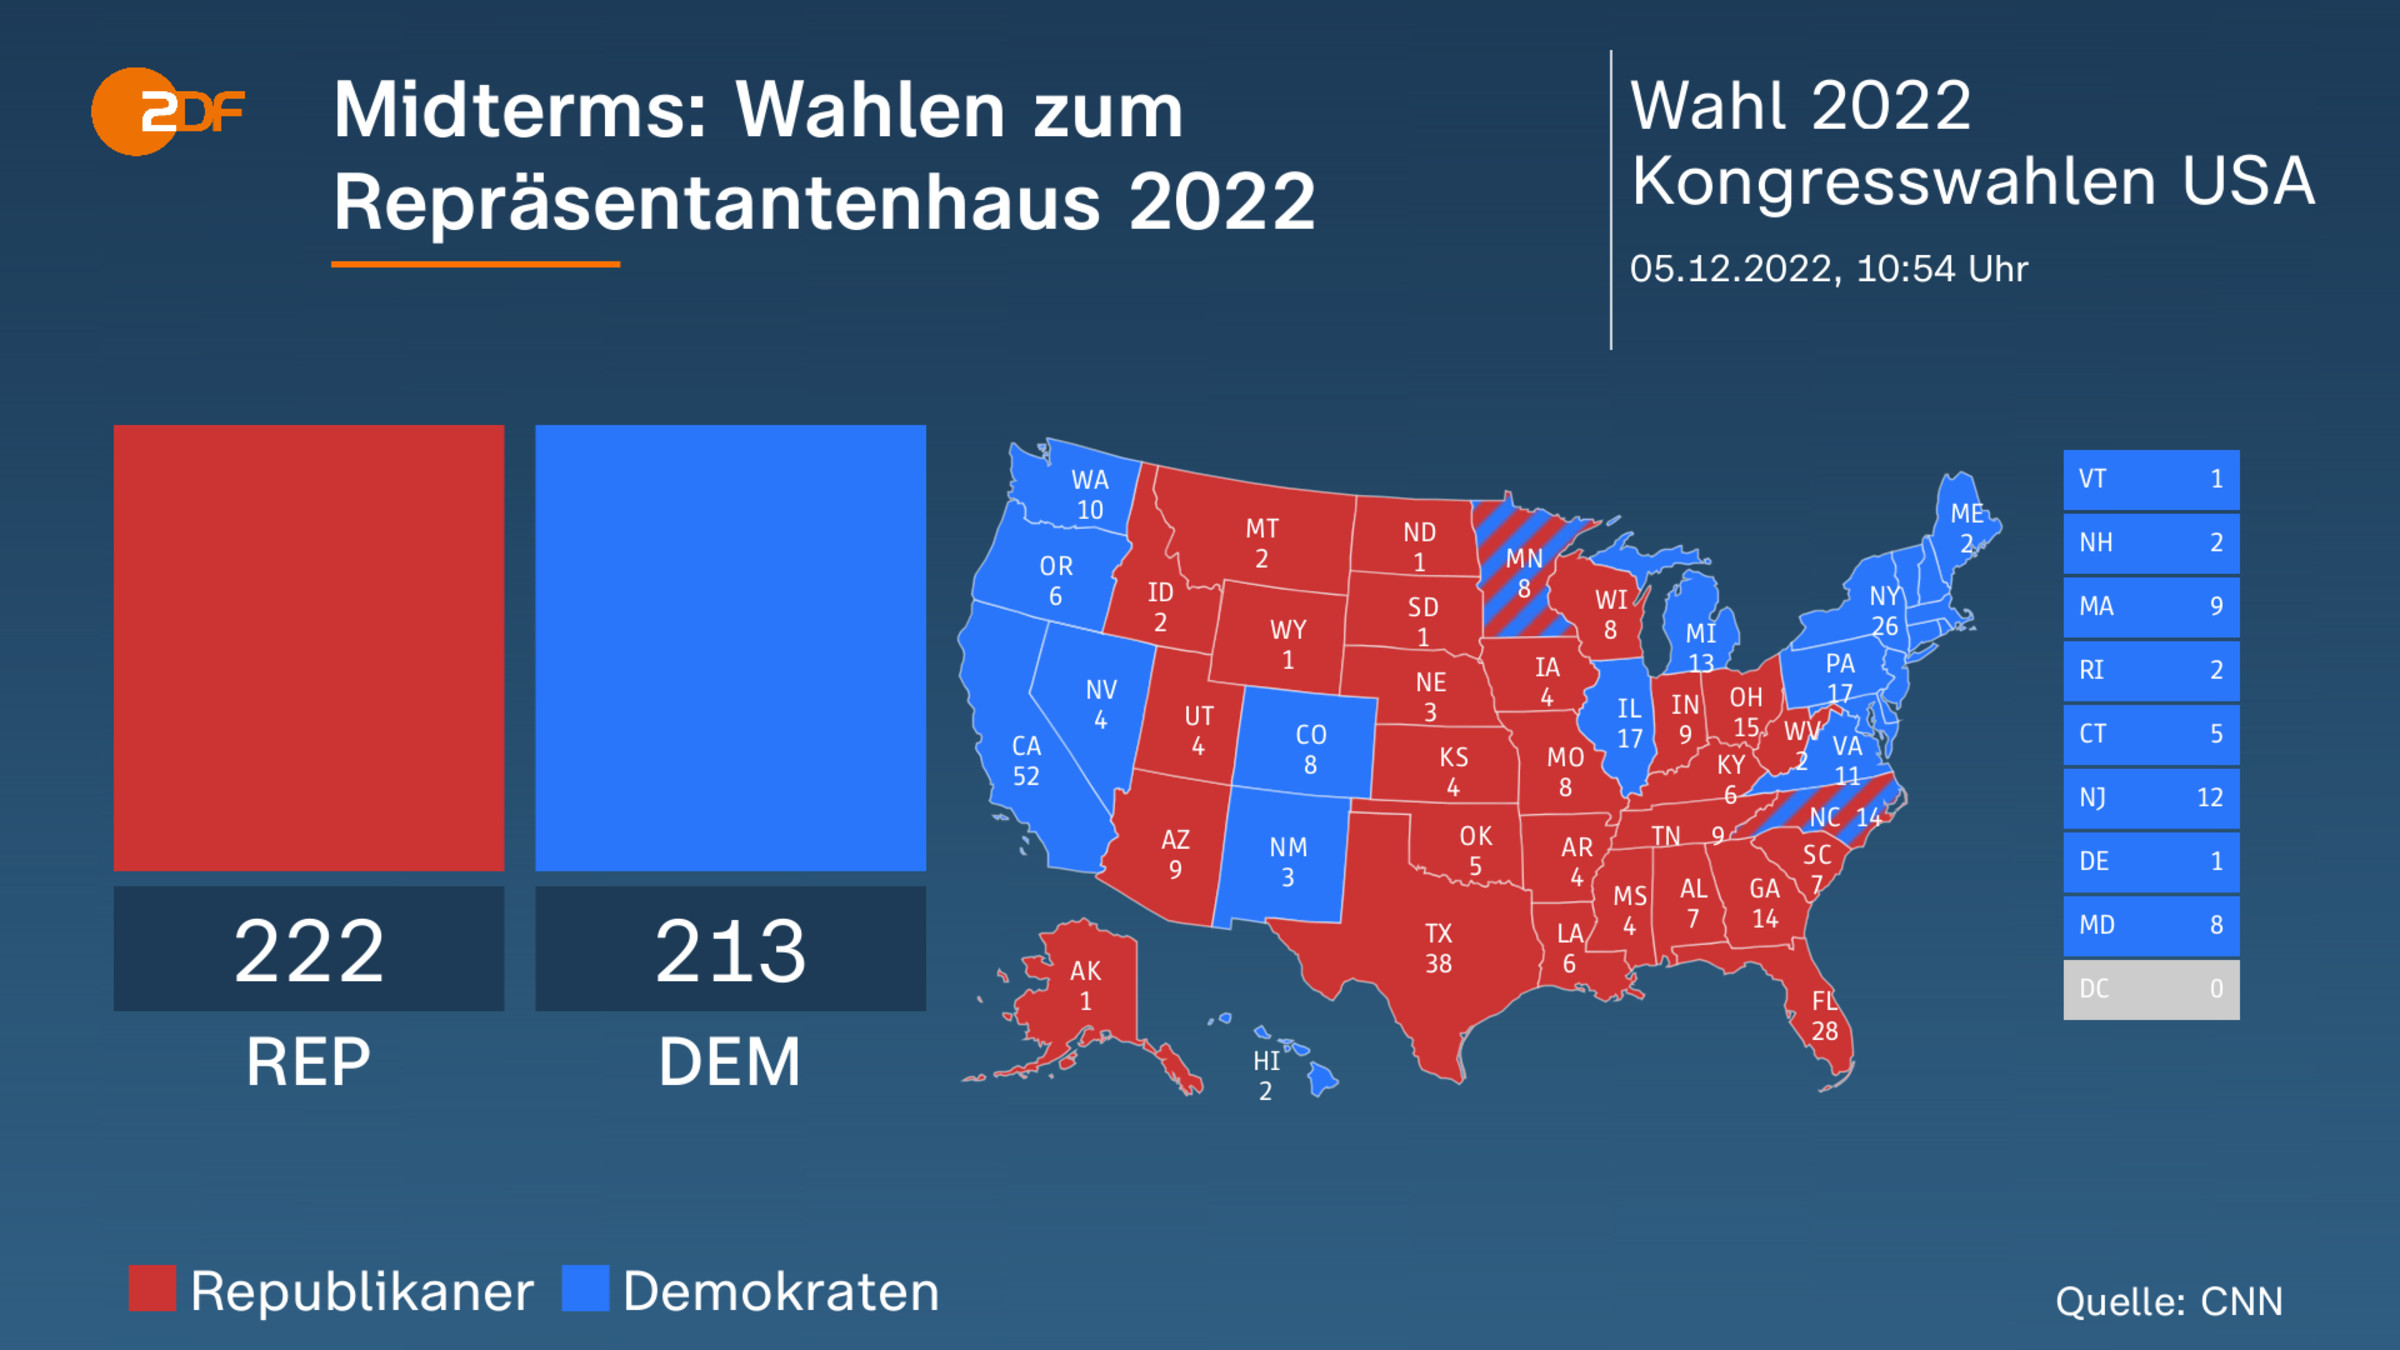 Midterms: Wahlen zum Repräsentantenhaus 2022